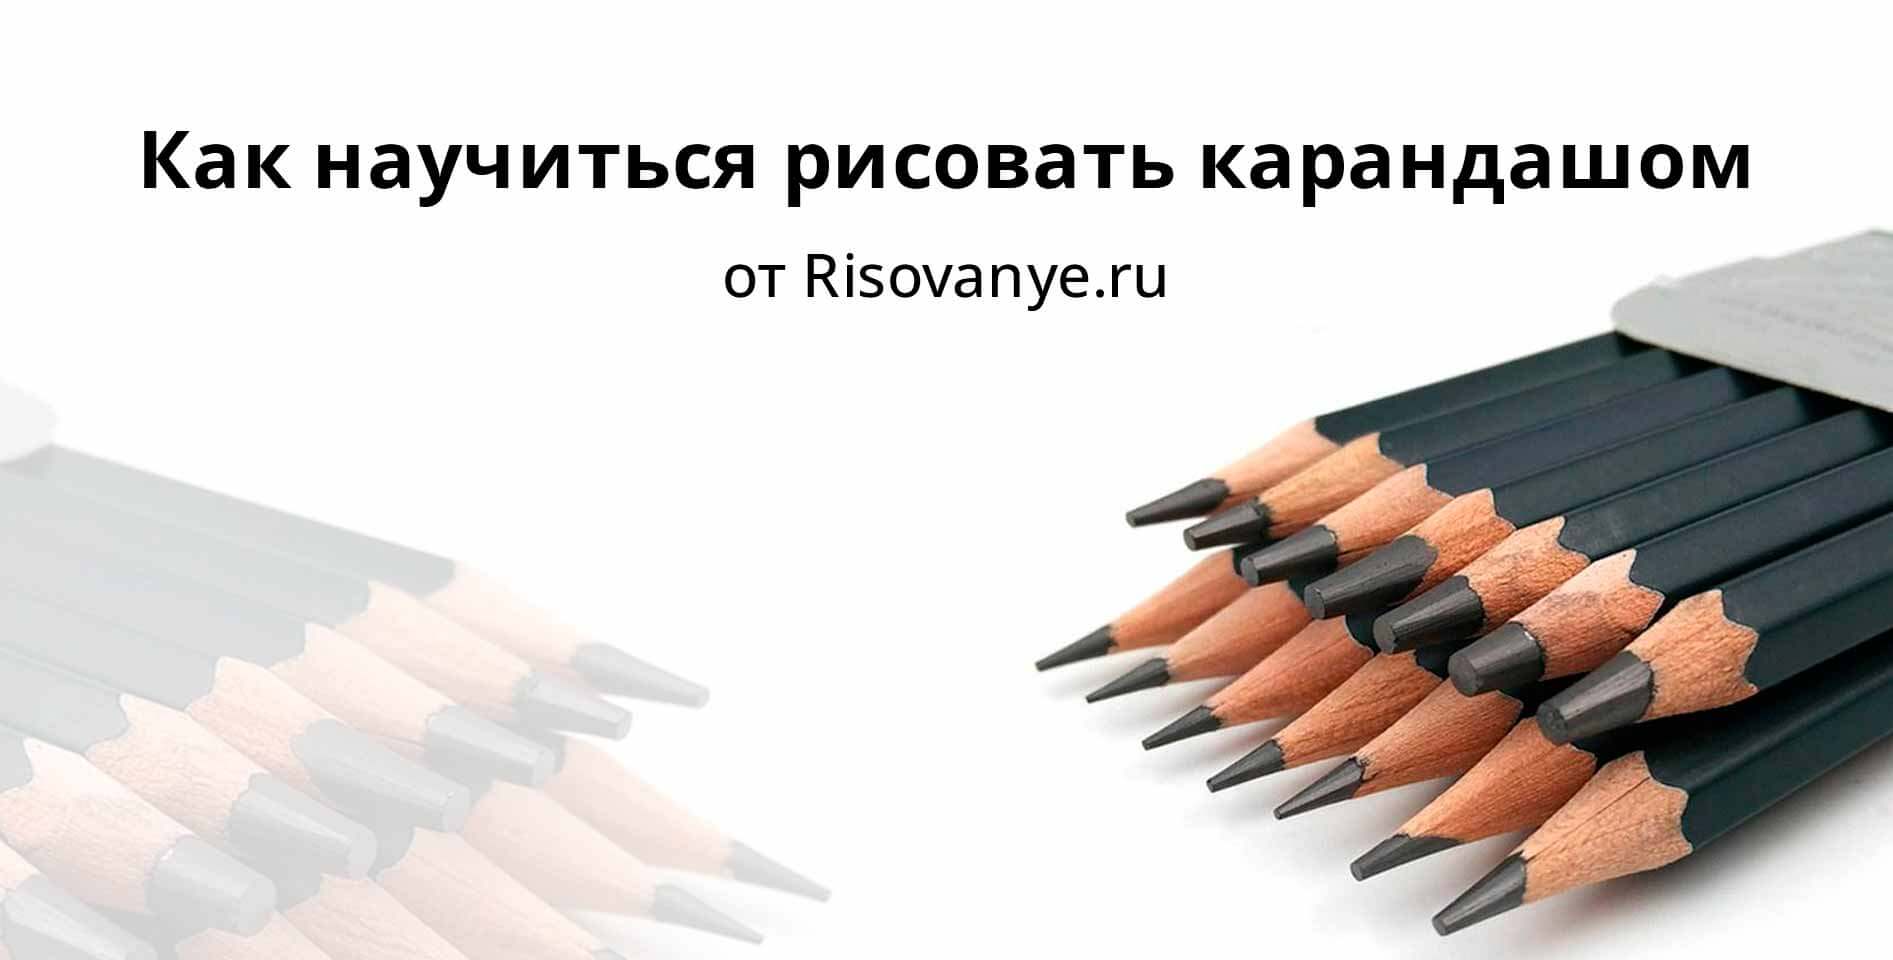 Risovanye.ru — Как научиться рисовать карандашом‎